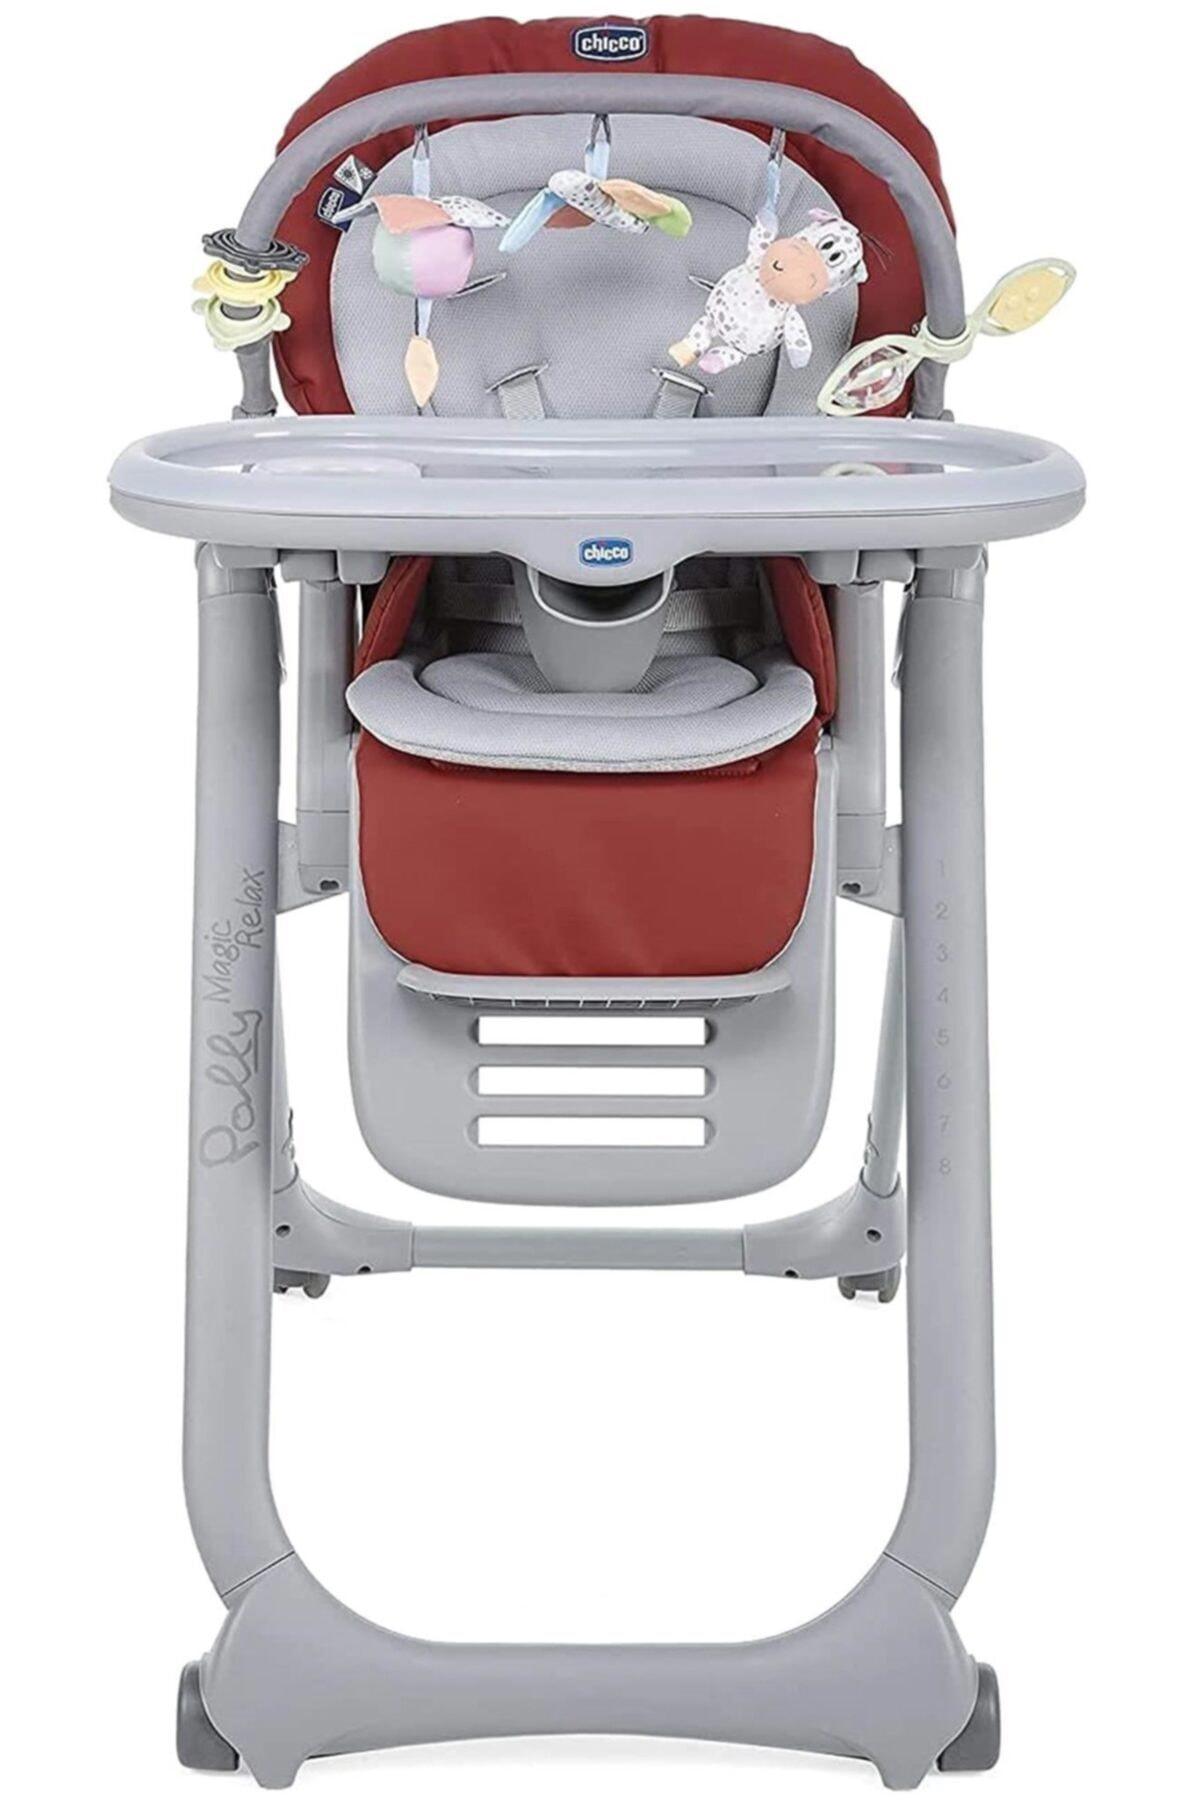 Chicco Polly Magic Relax Plastik Emniyet Kemeri 15 kg Kapasiteli Tekerlekli Tepsili Katlanır Mama Sandalyesi Kırmızı